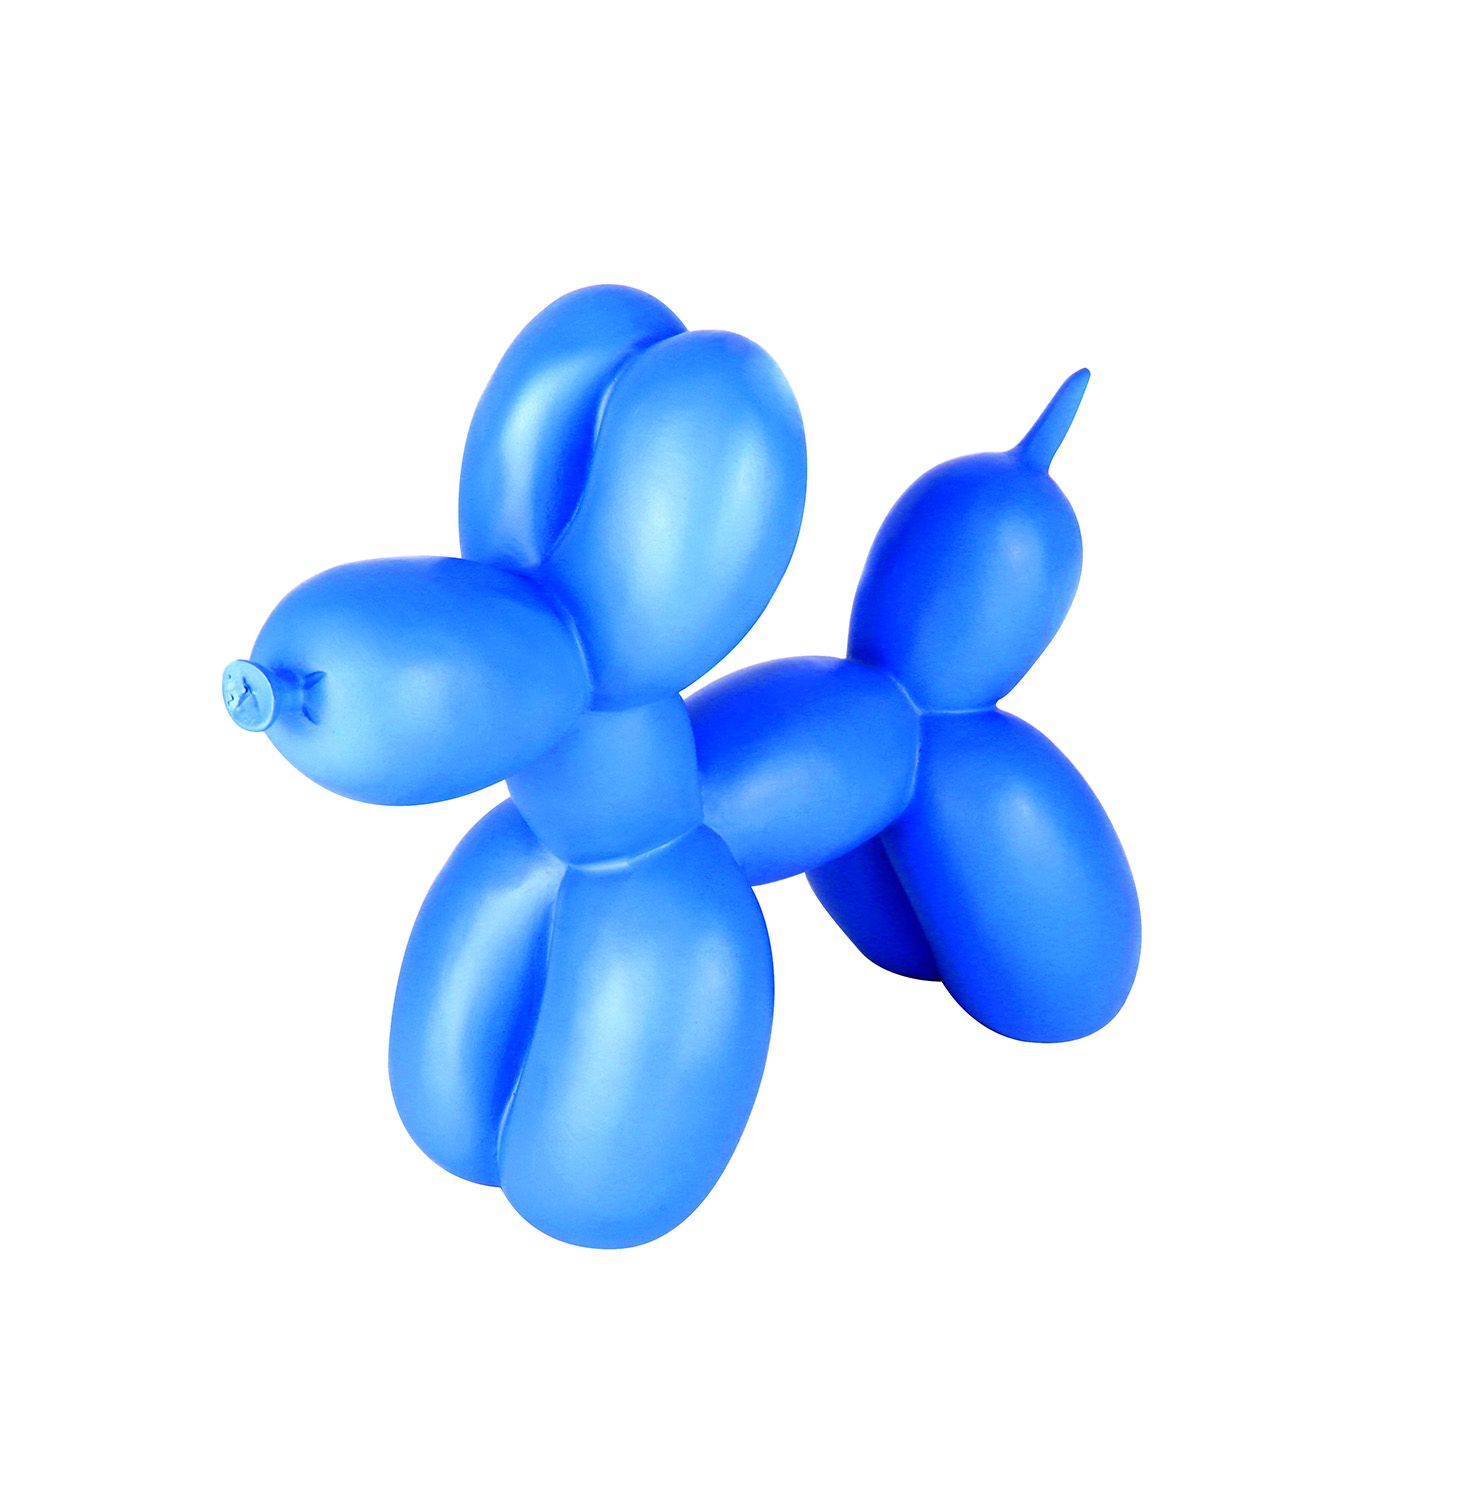  Balloon Dog - 12 